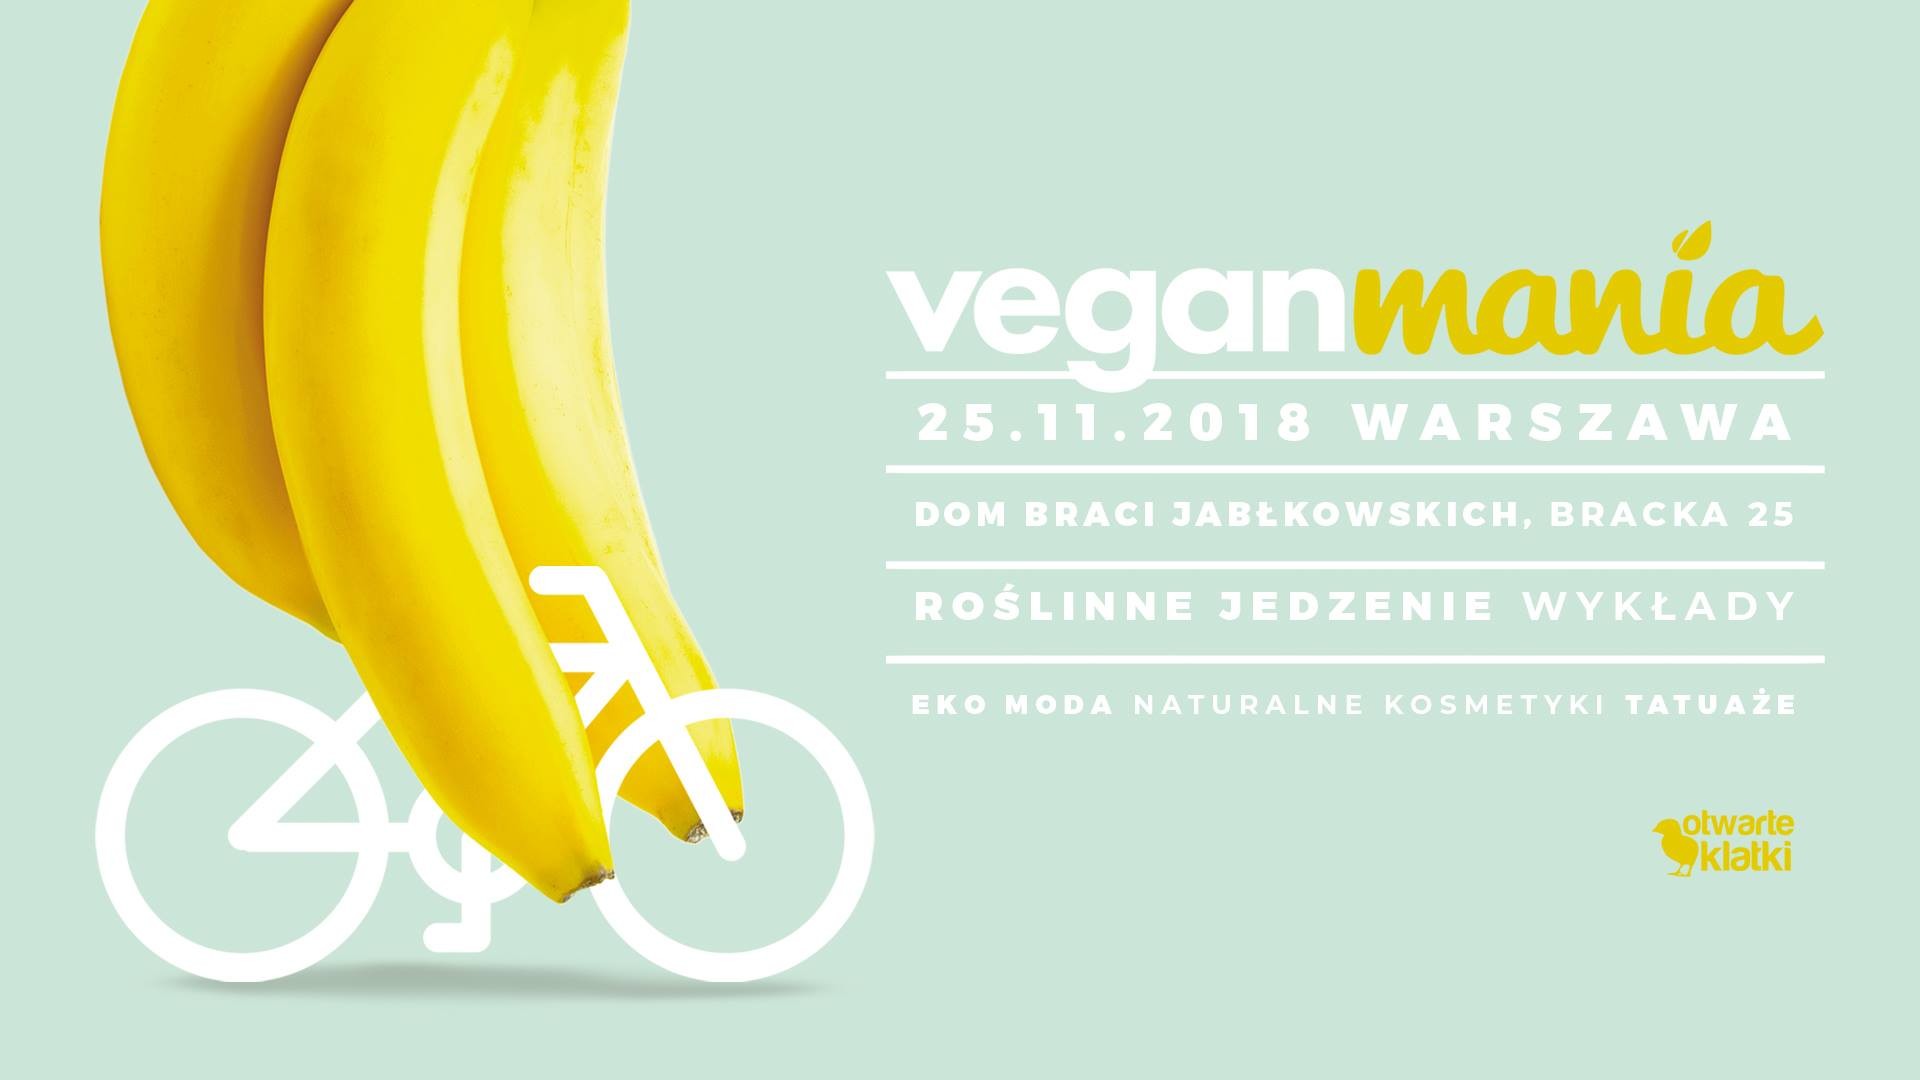 Veganmania Warsaw